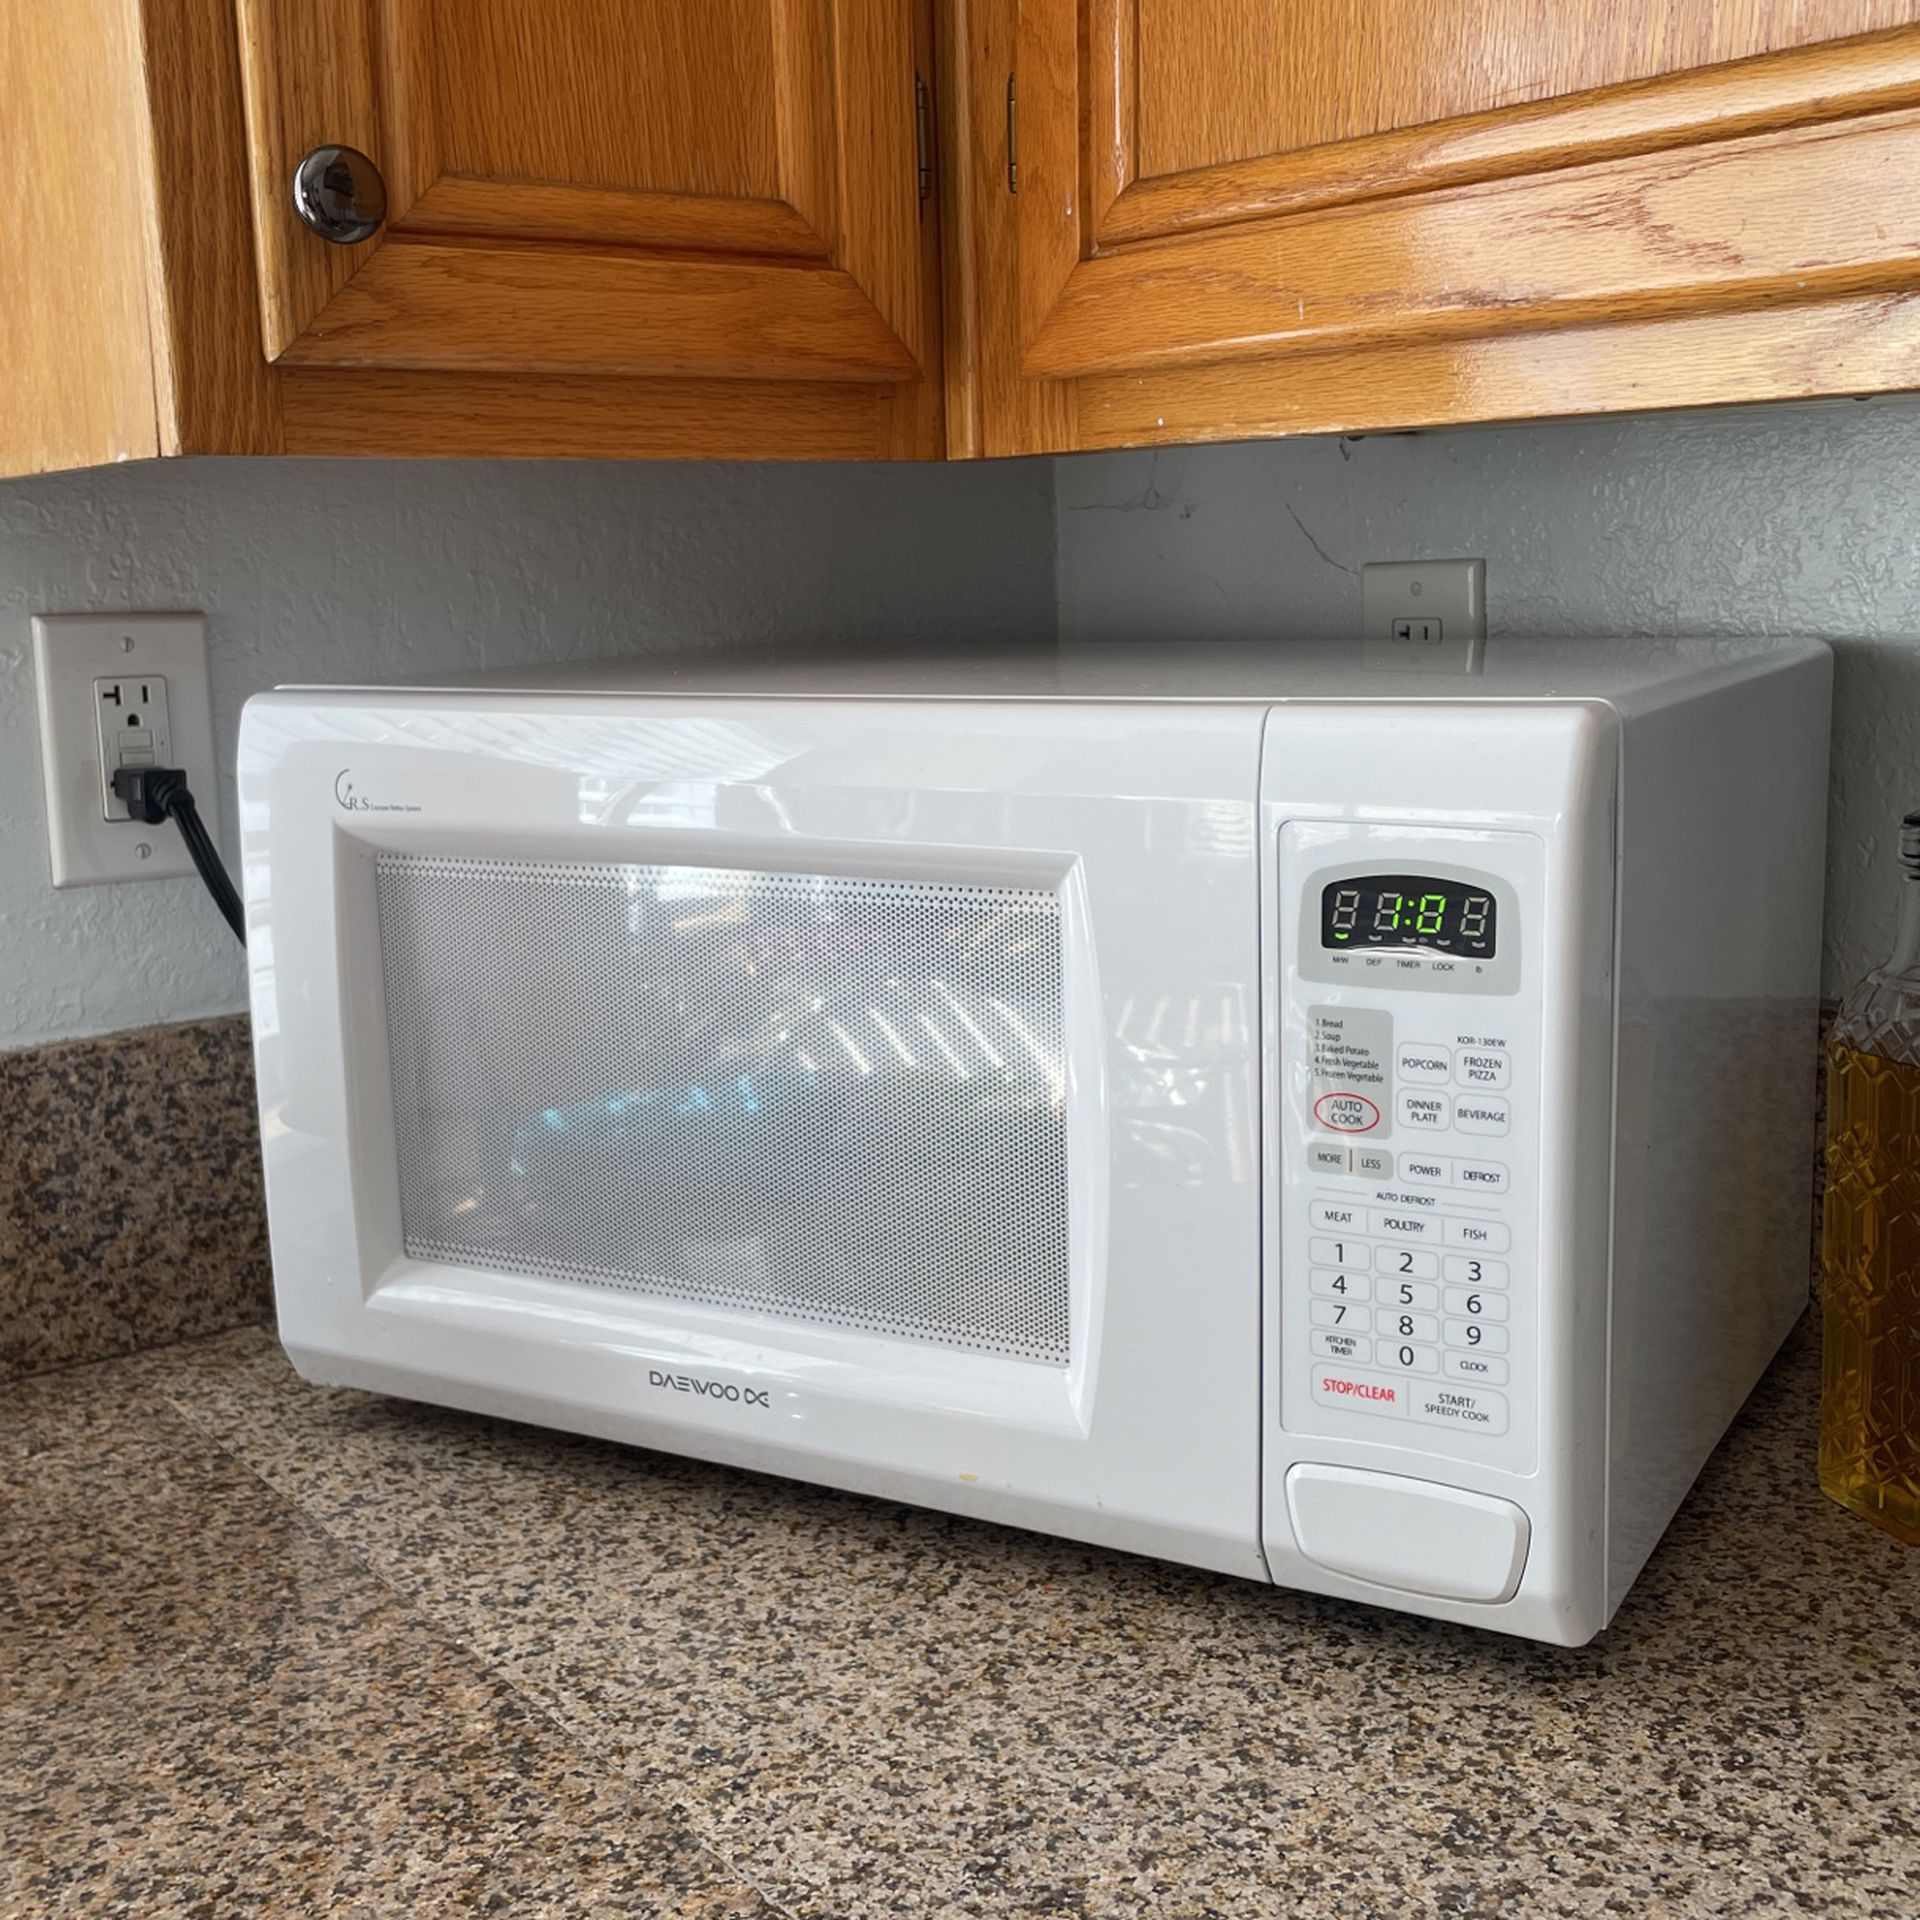 Daewood Microwave 